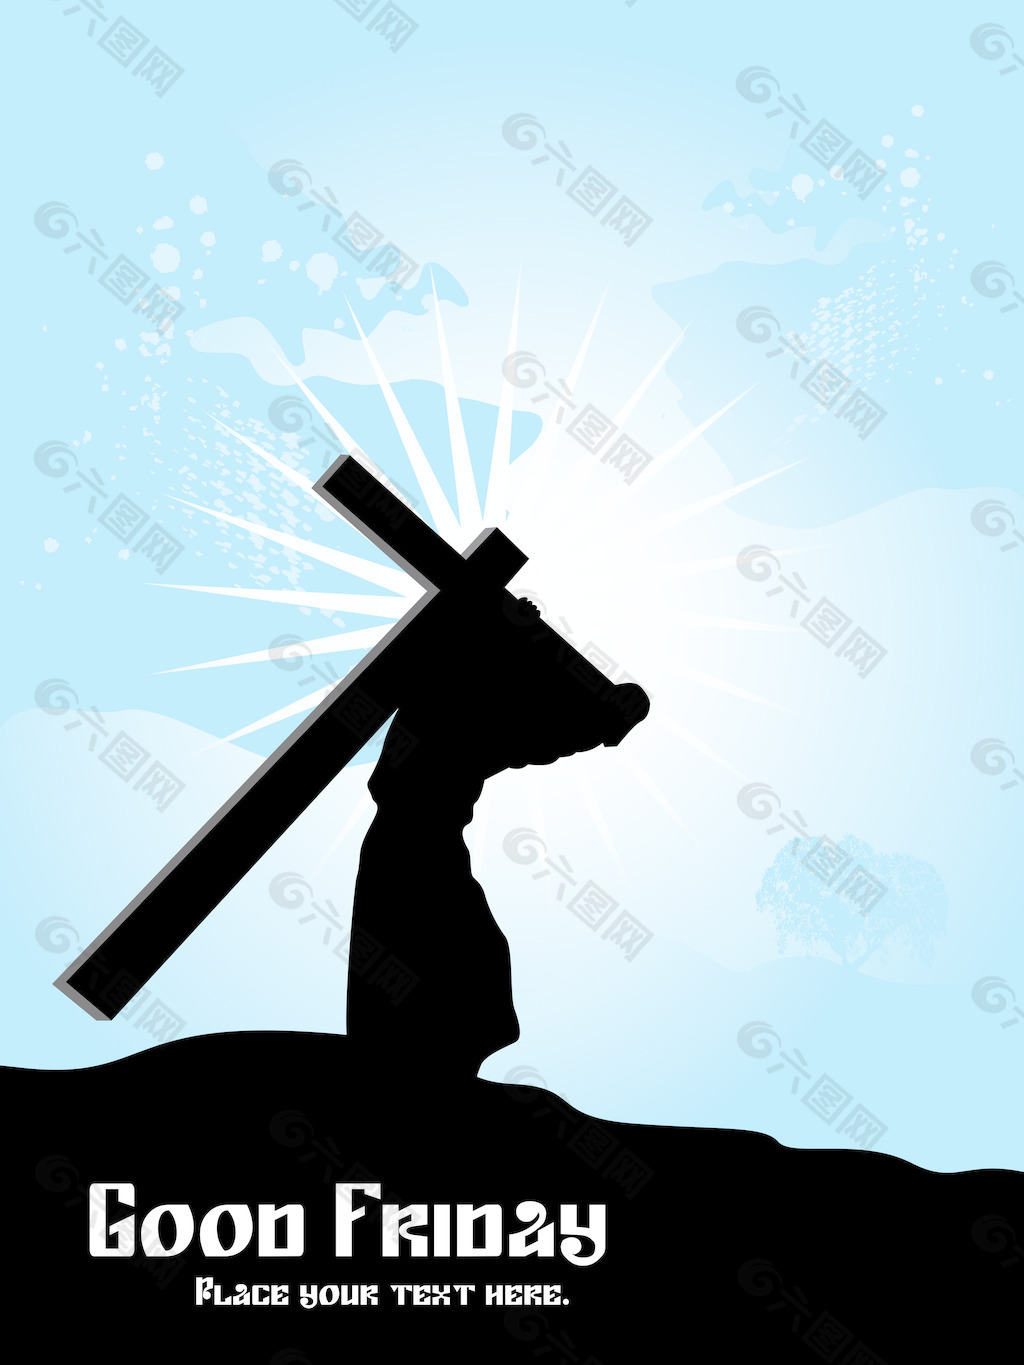 沉默中思想│耶穌呼召人背十字架 - 台灣教會公報新聞網